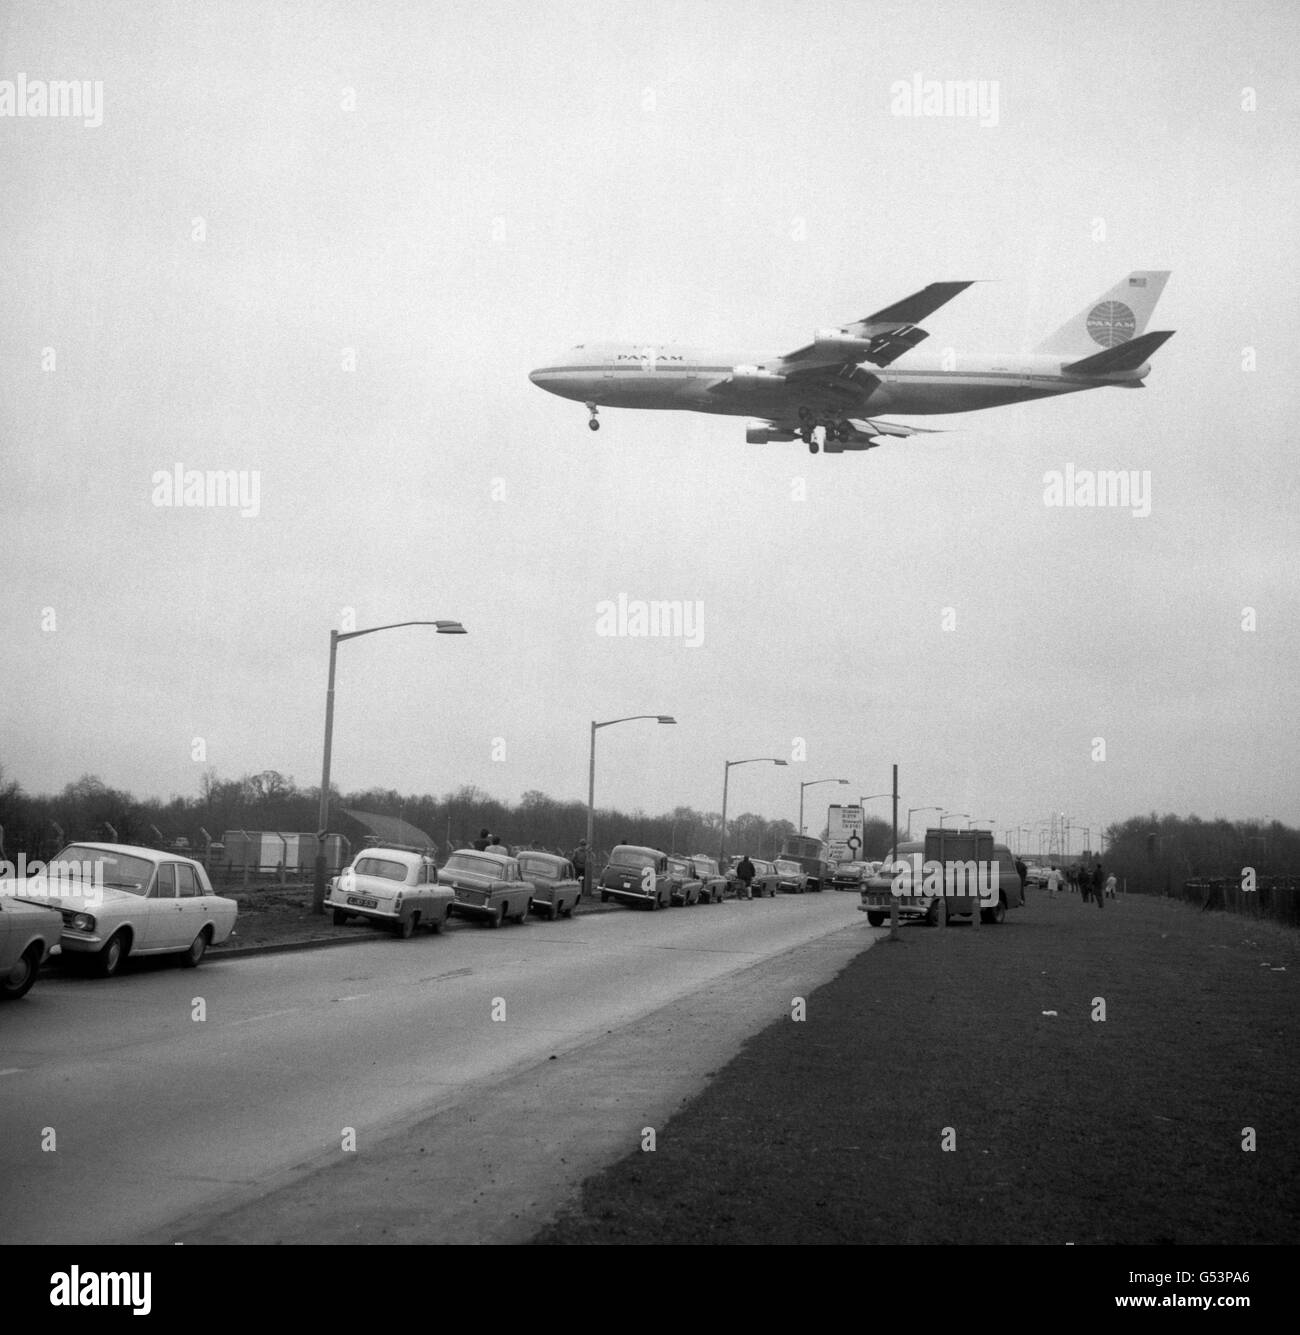 Riempiendo il cielo, il potente jet Boeing 747 jumbo passa sotto la strada quando arriva per la prima volta all'aeroporto di Heathrow. Foto Stock